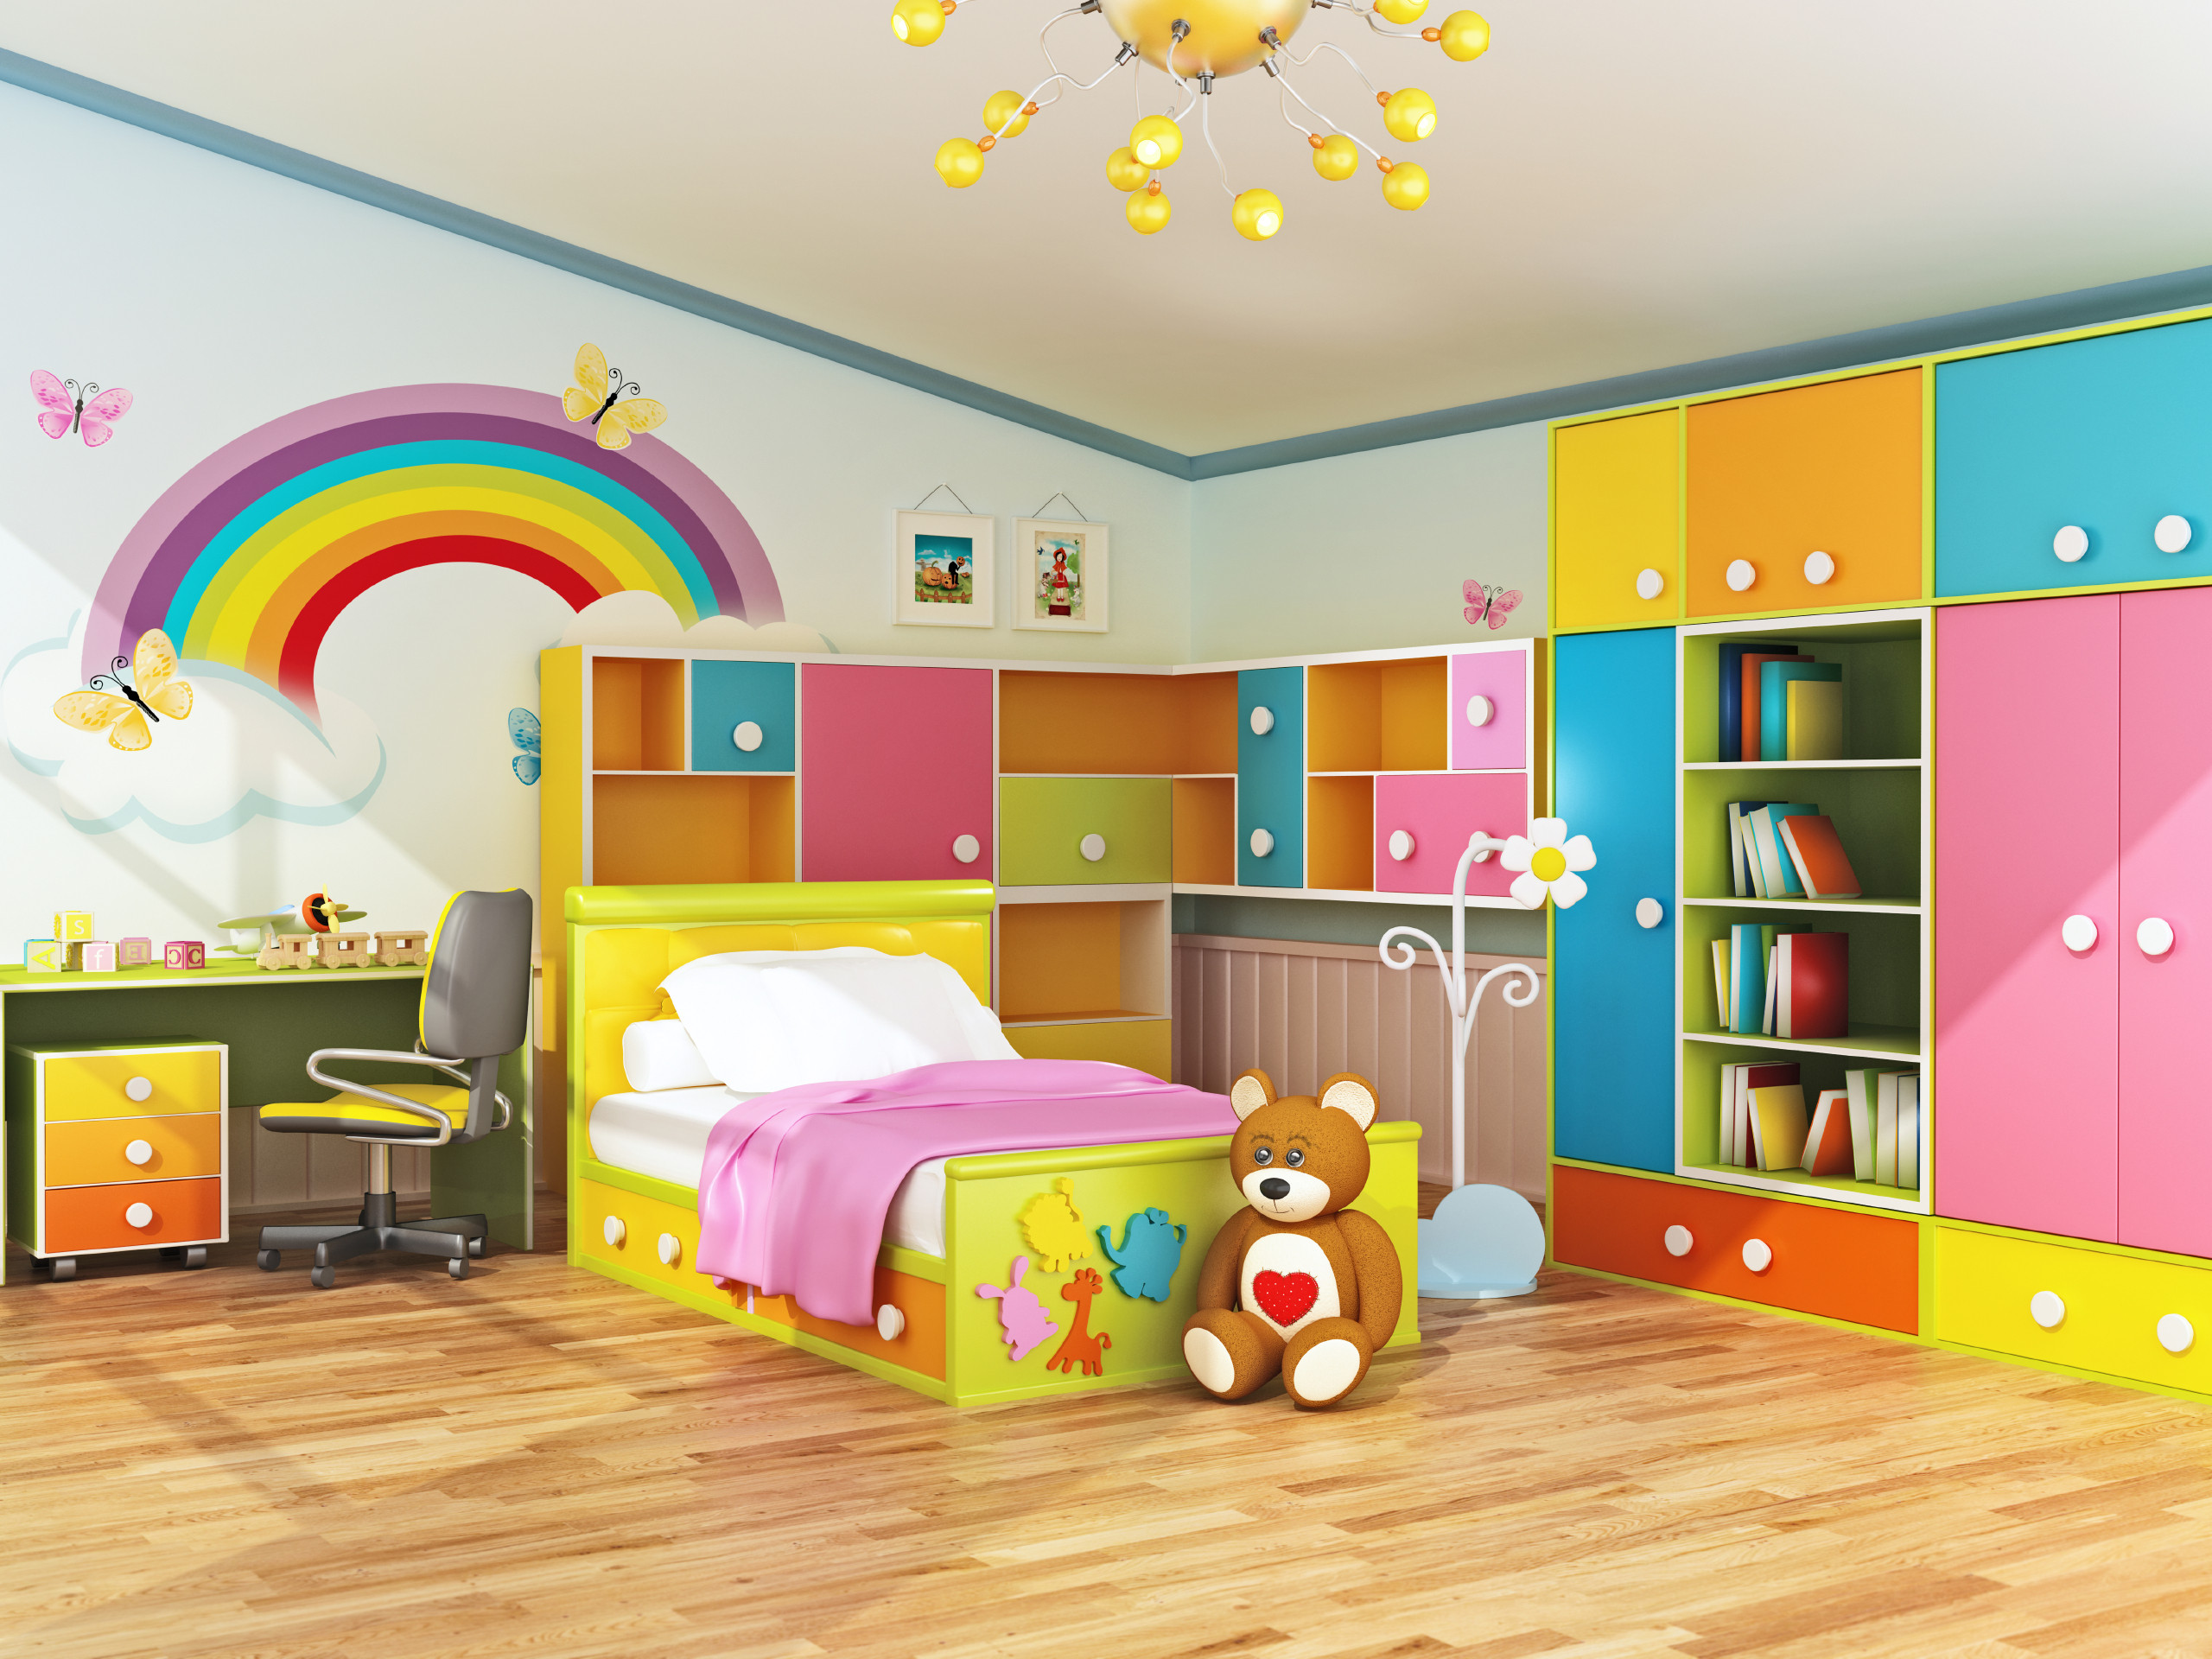 Kids Room Interior Design
 Plan Ahead When Decorating Kids Bedrooms